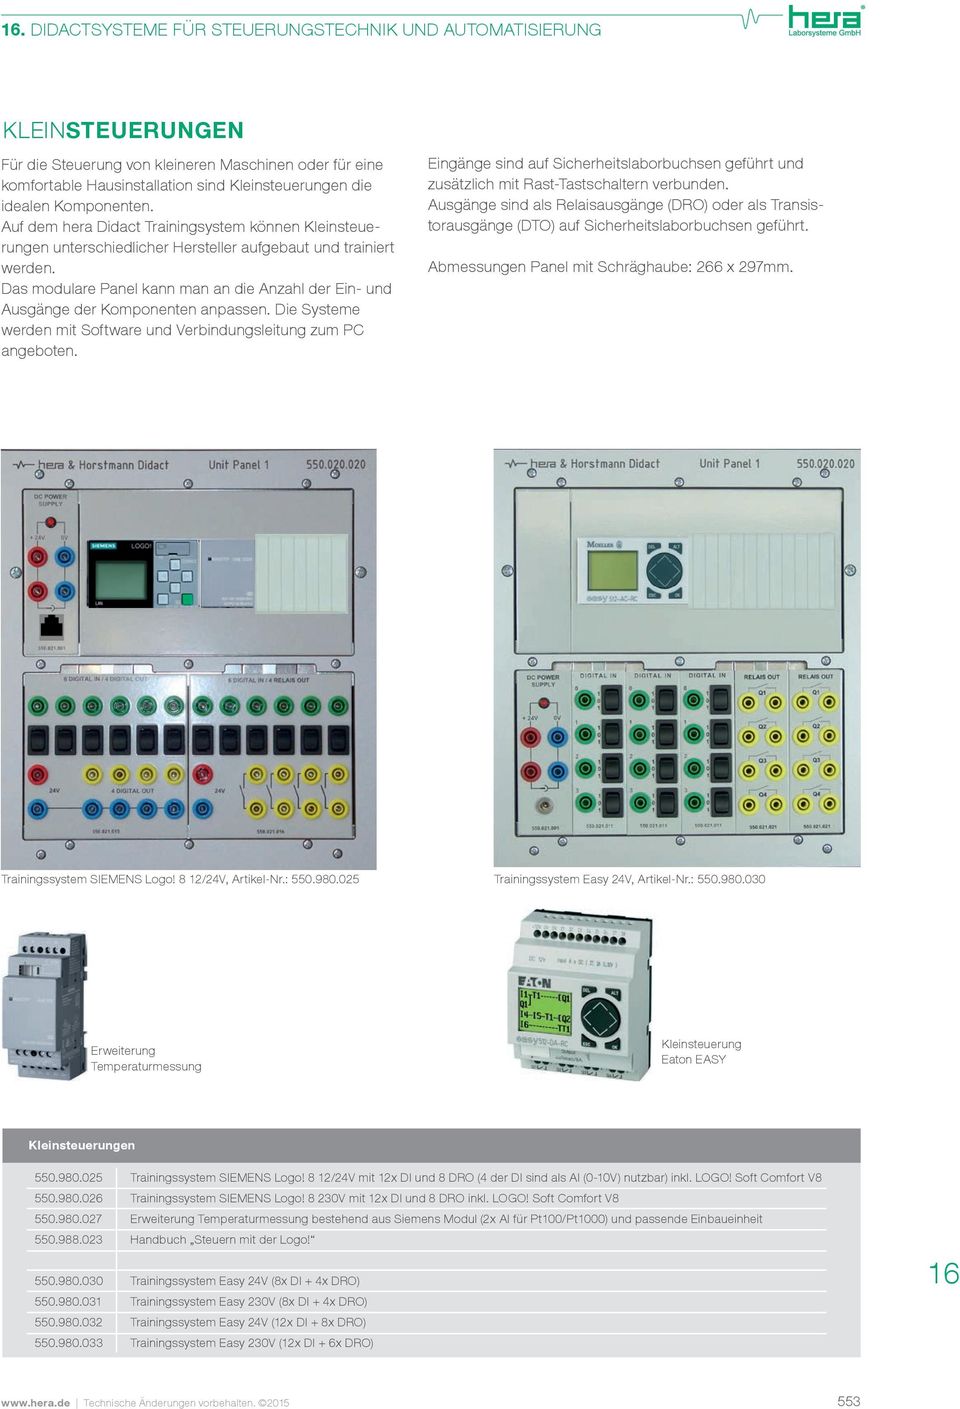 Das modulare Panel kann man an die Anzahl der Ein- und Ausgänge der Komponenten anpassen. Die Systeme werden mit Software und Verbindungsleitung zum PC angeboten.